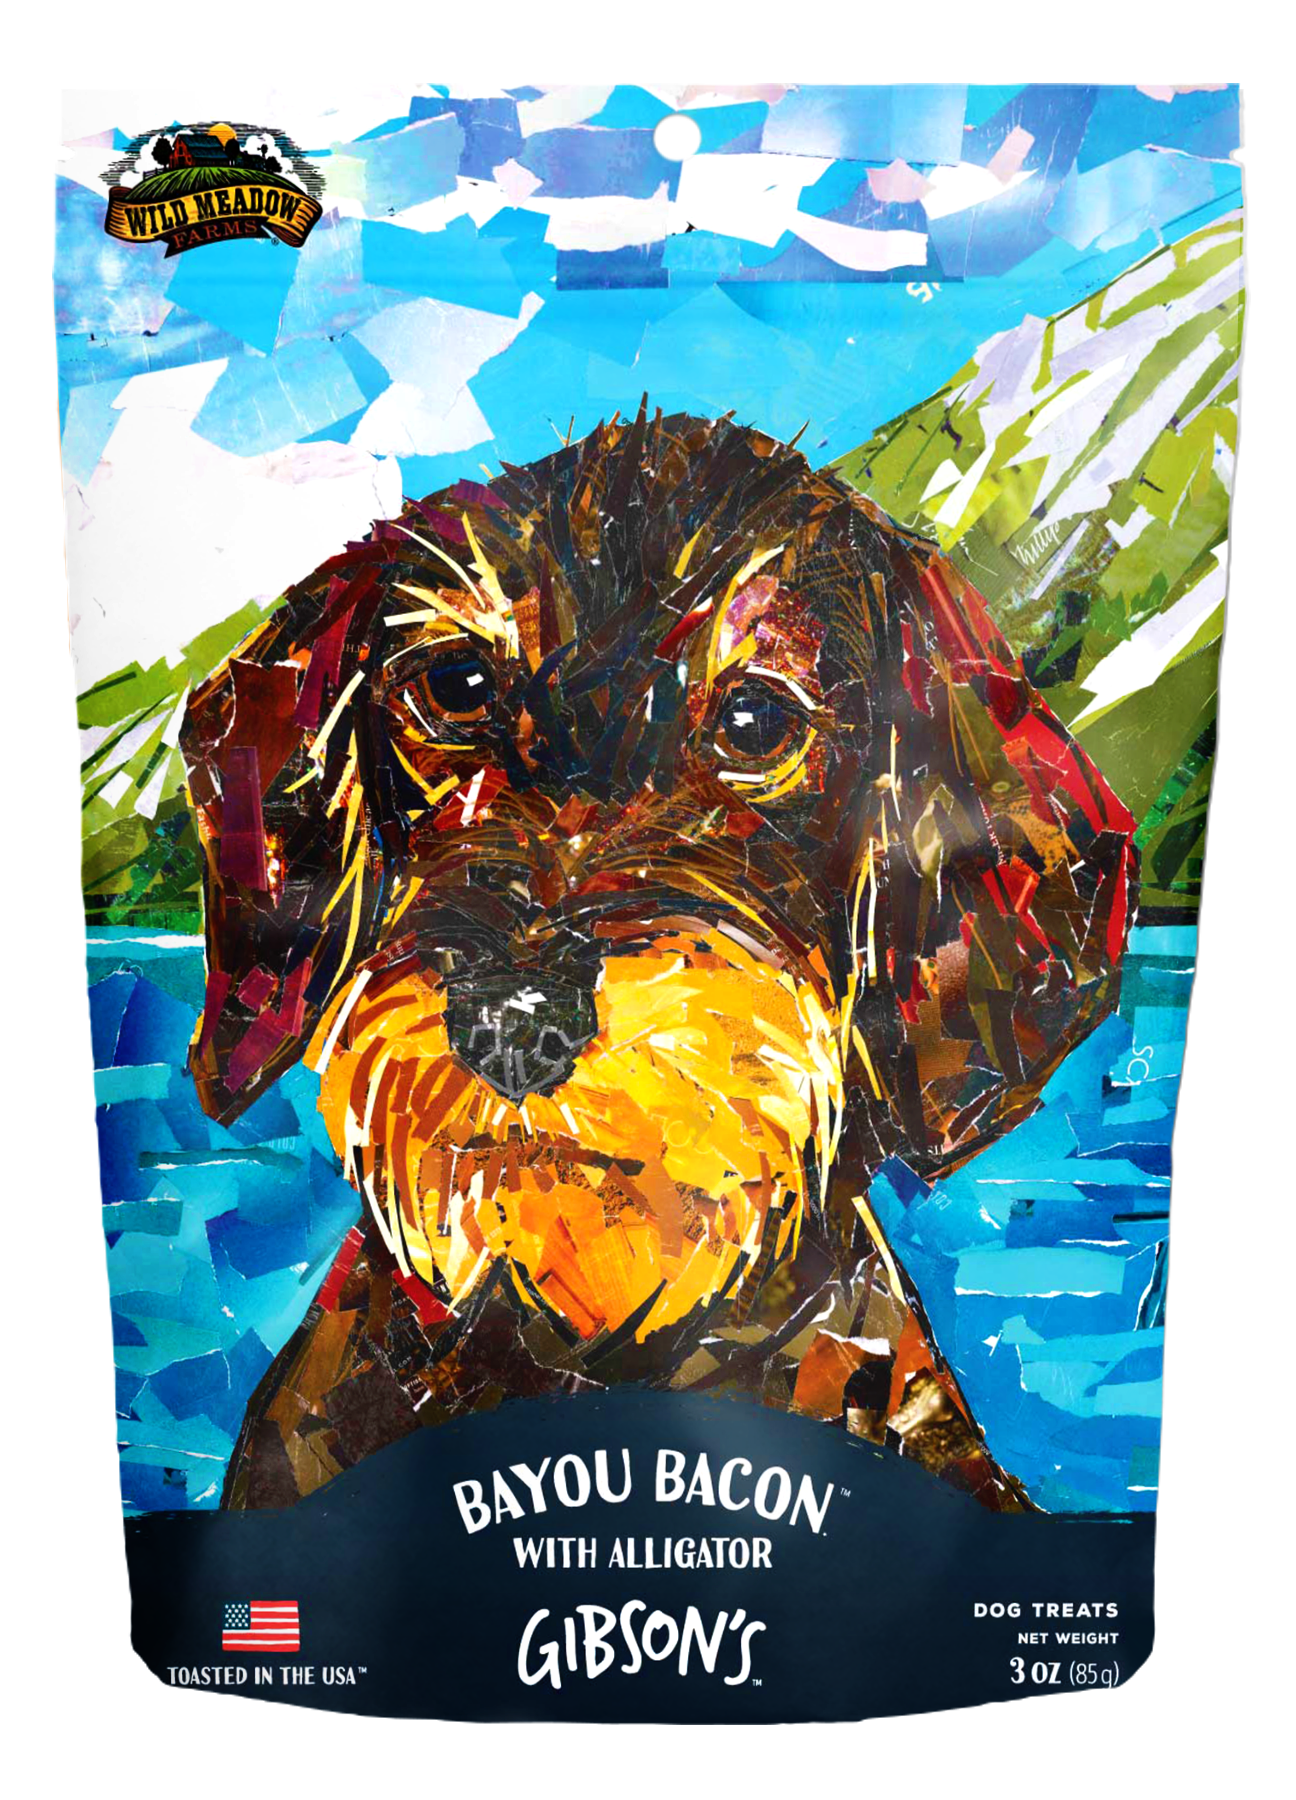 Gibson's Bayou Bacon with Alligator - Jerky Dog Treats